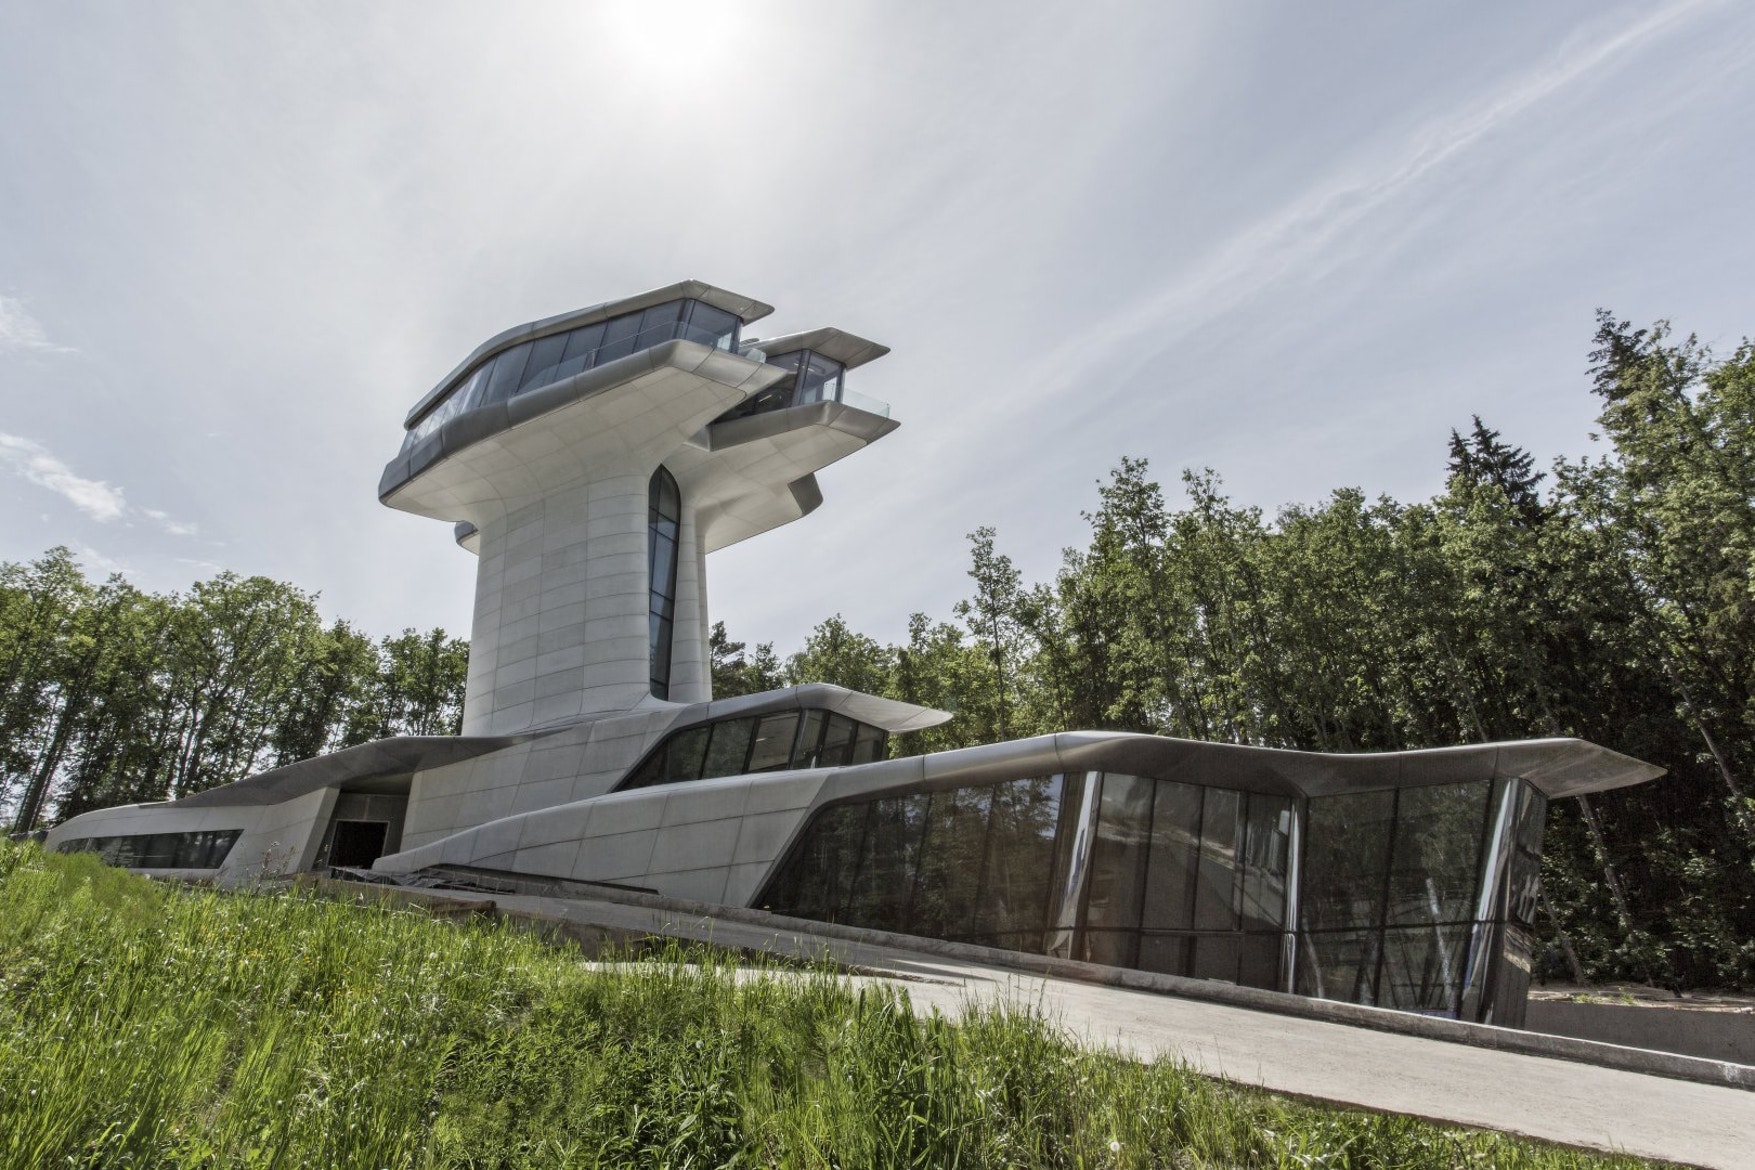 Zaha Hadid 設計之唯一私人住所正式面世